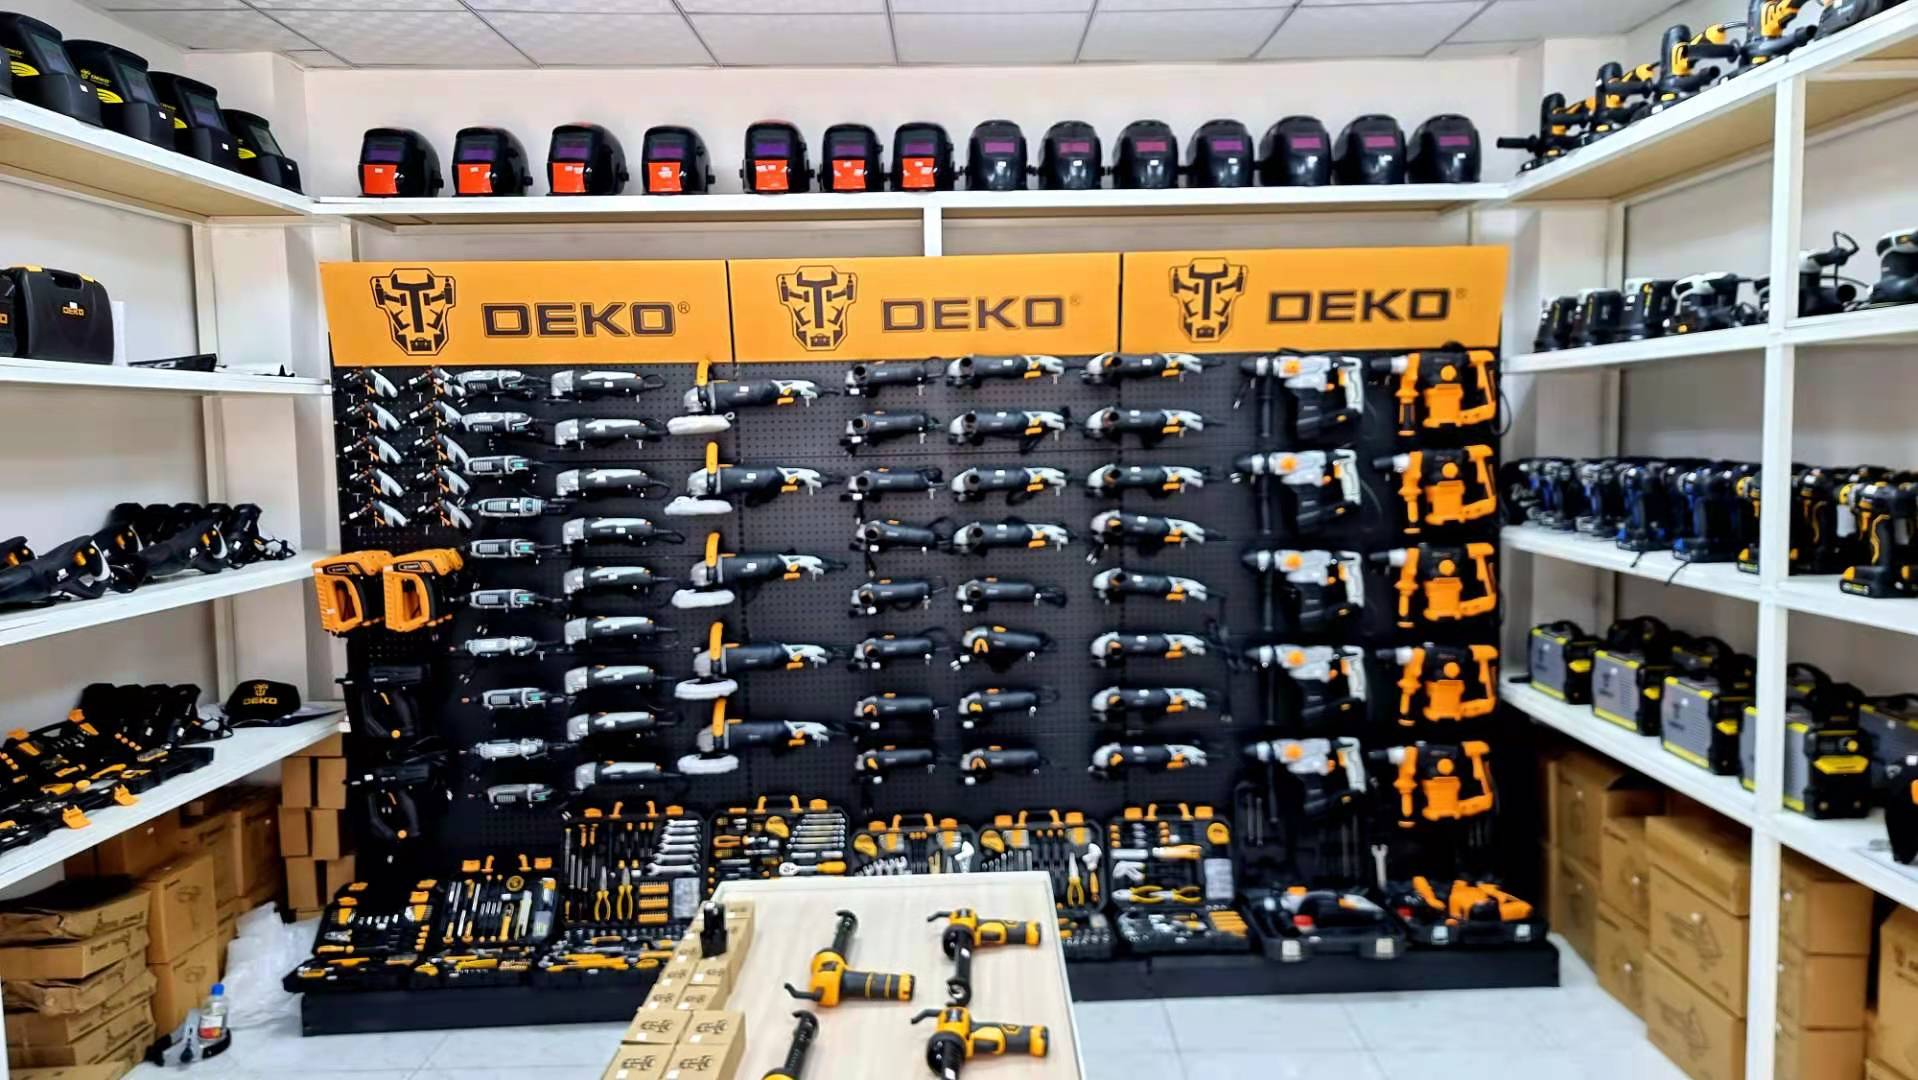 power tool supplier DEKO's offline shop